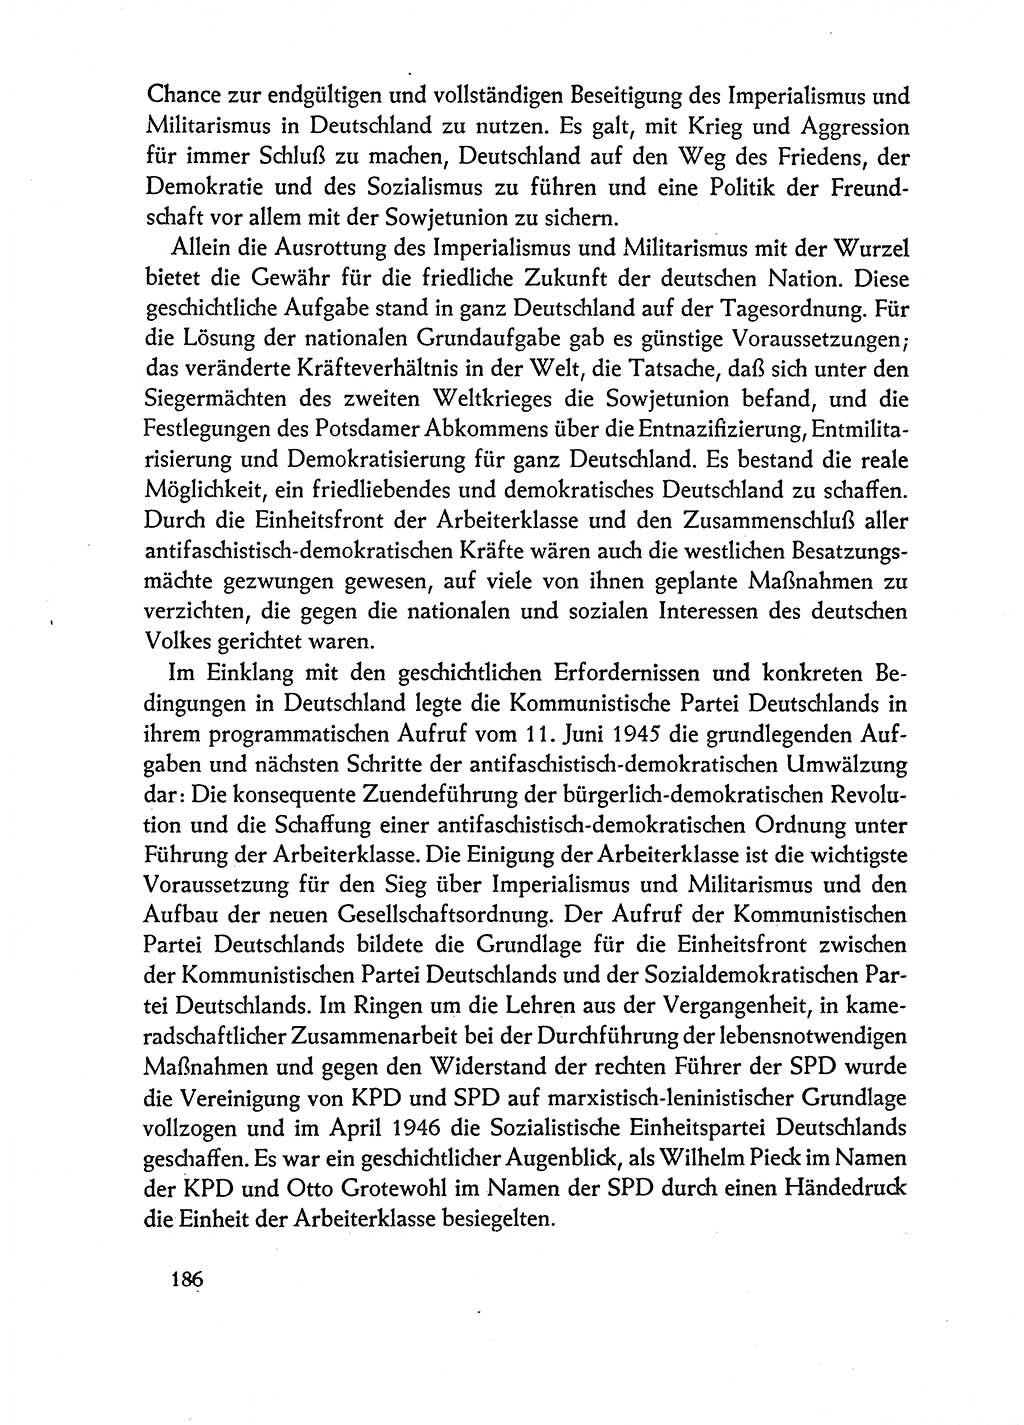 Dokumente der Sozialistischen Einheitspartei Deutschlands (SED) [Deutsche Demokratische Republik (DDR)] 1962-1963, Seite 186 (Dok. SED DDR 1962-1963, S. 186)